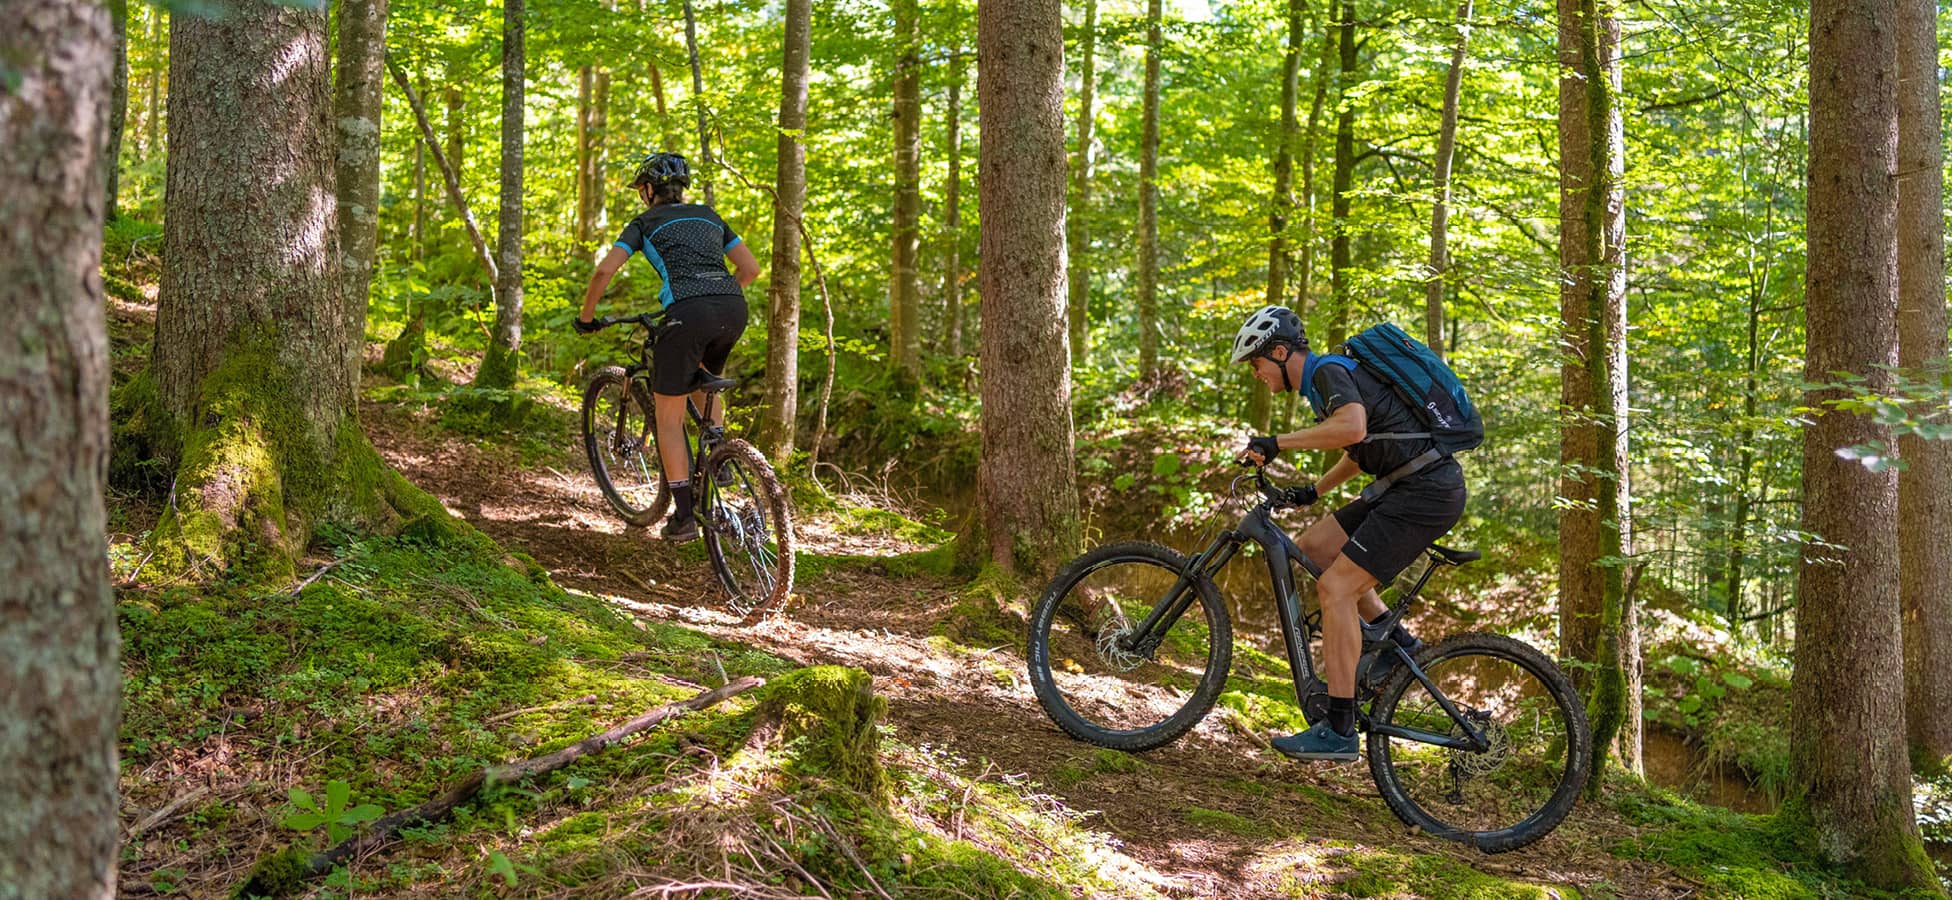 Eine kleine Steigung am Waldweg ist kein Problem mit dem E-Mountainbike